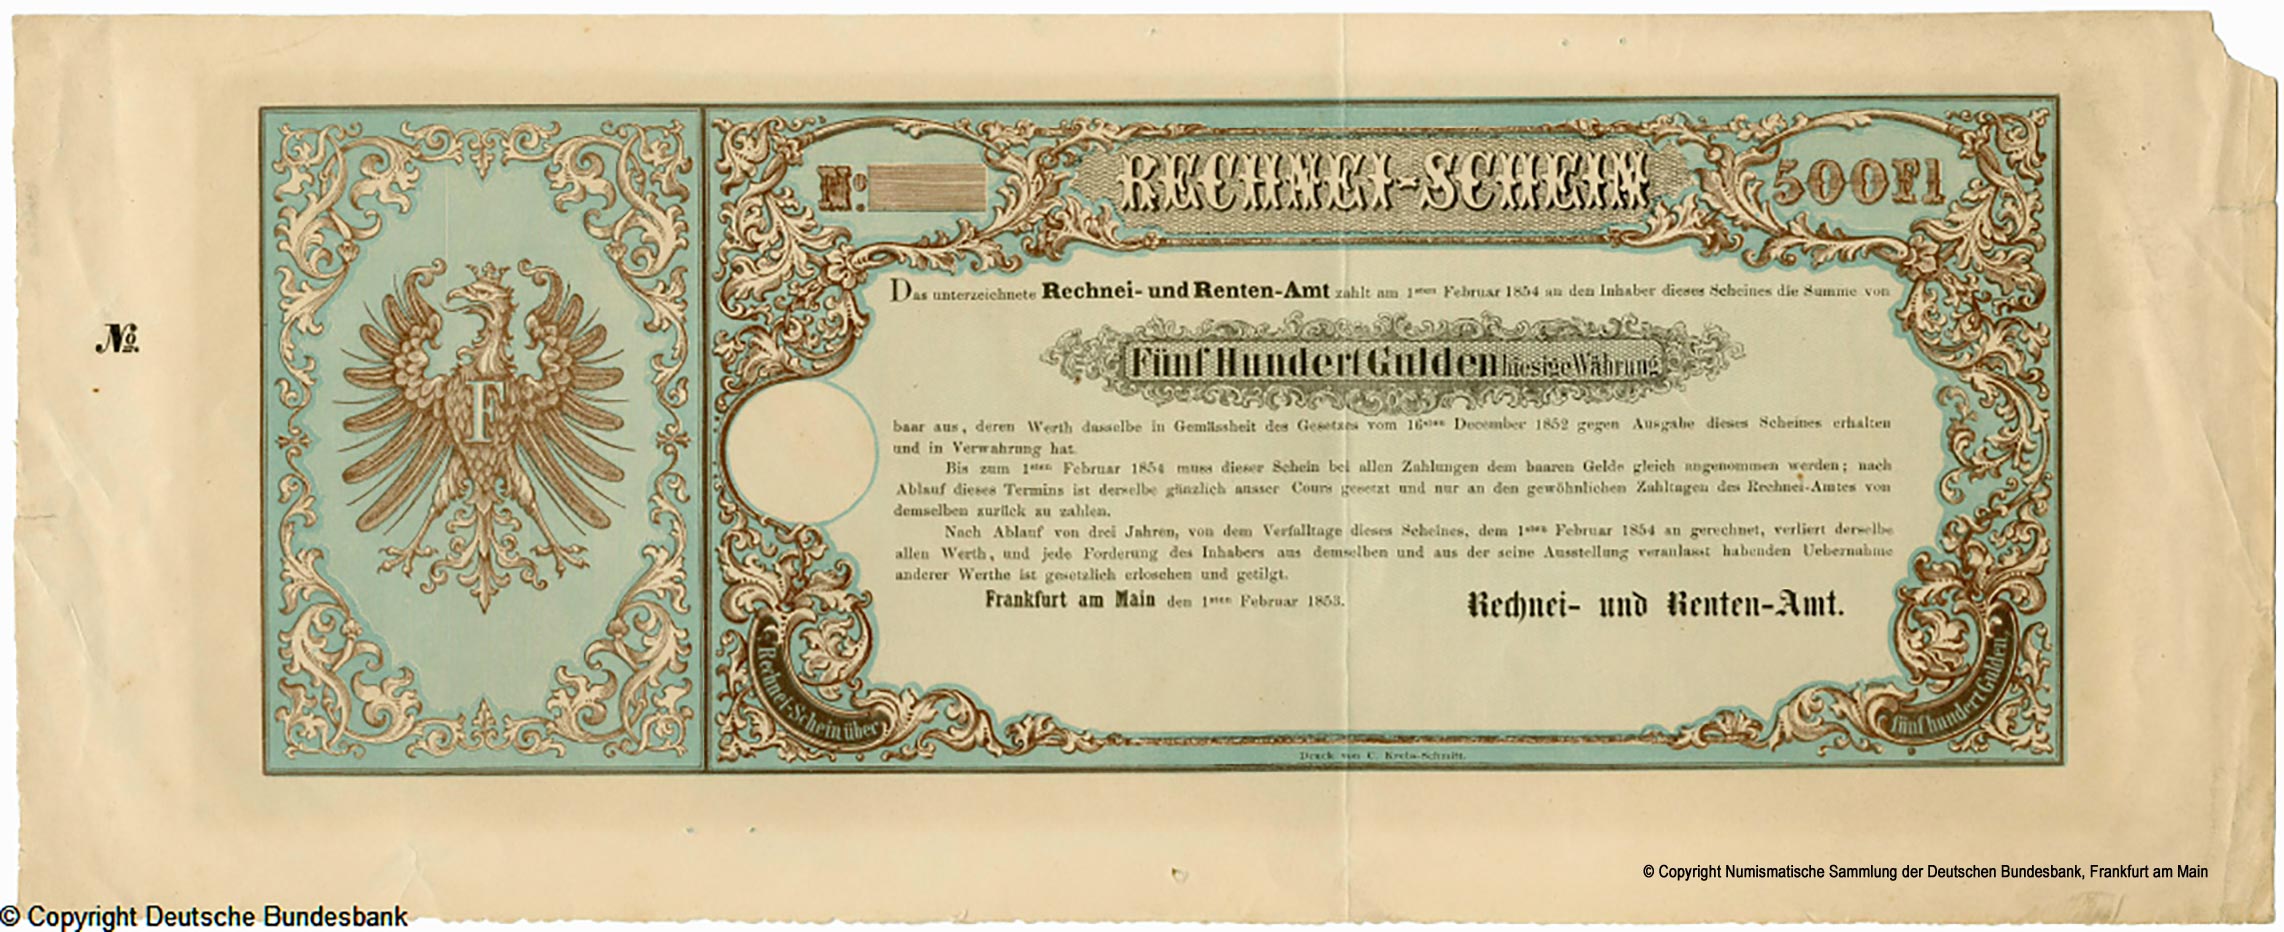 Rechnei und Rentenamt 500 Thaler 1853